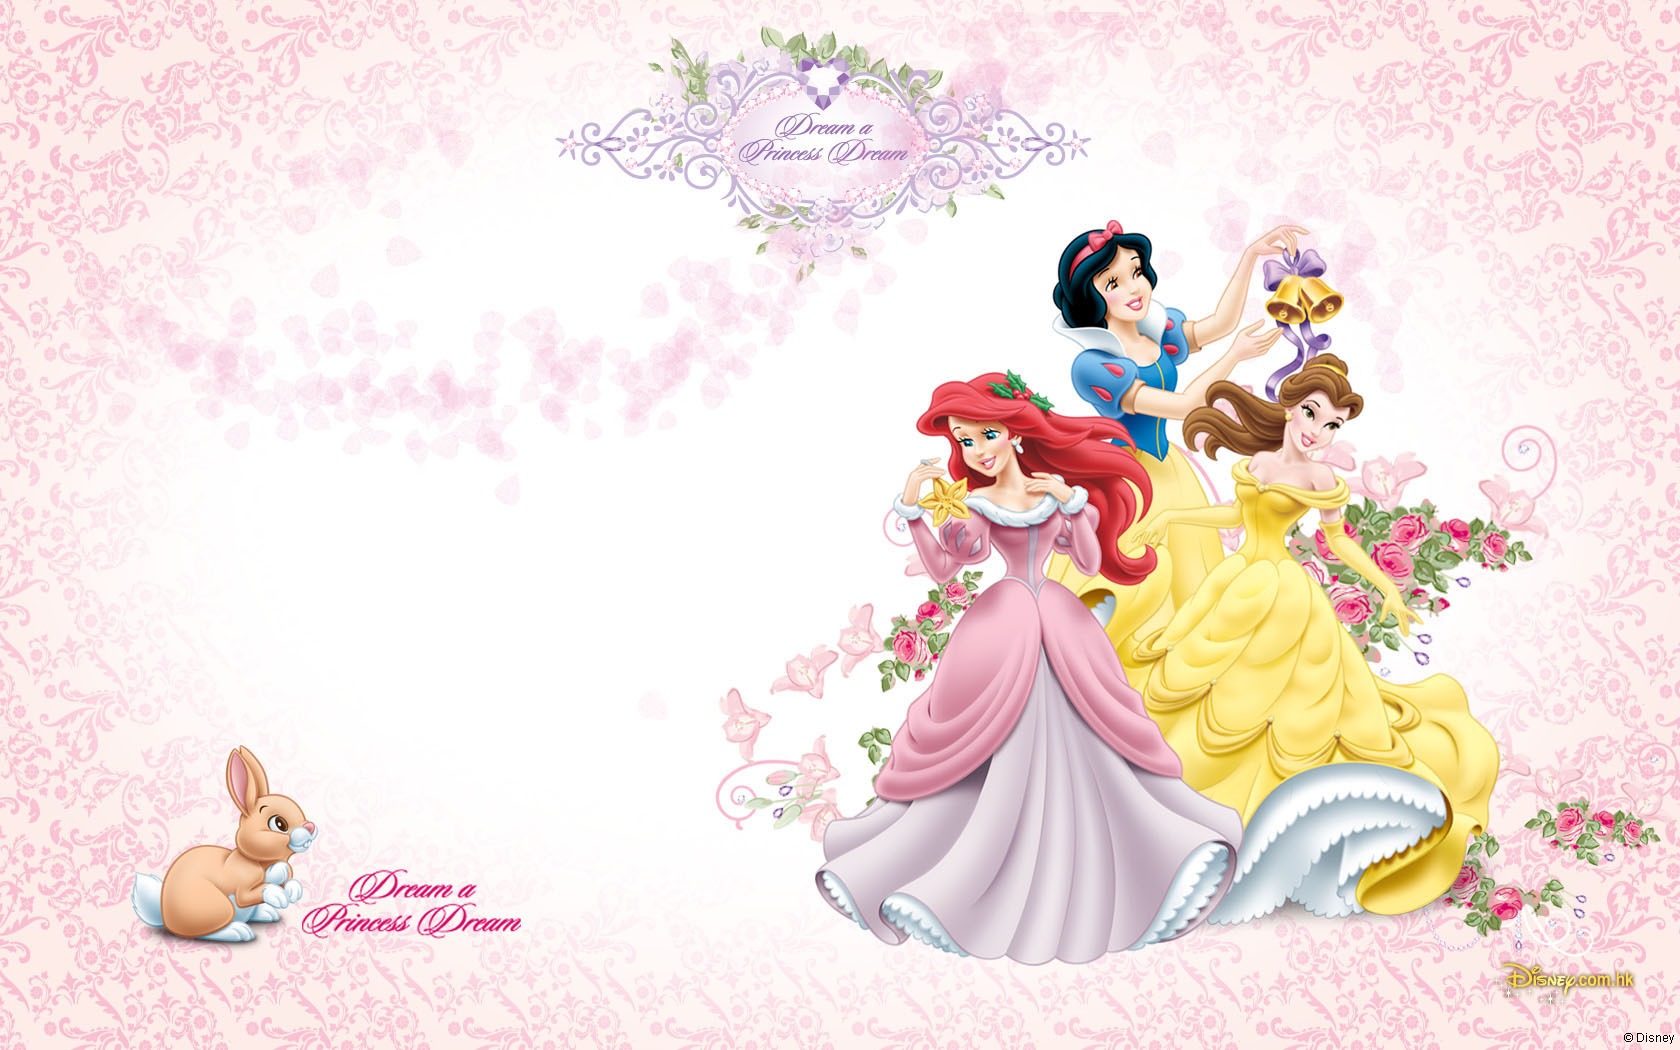 Disney Princess Image Wallpaper Photos